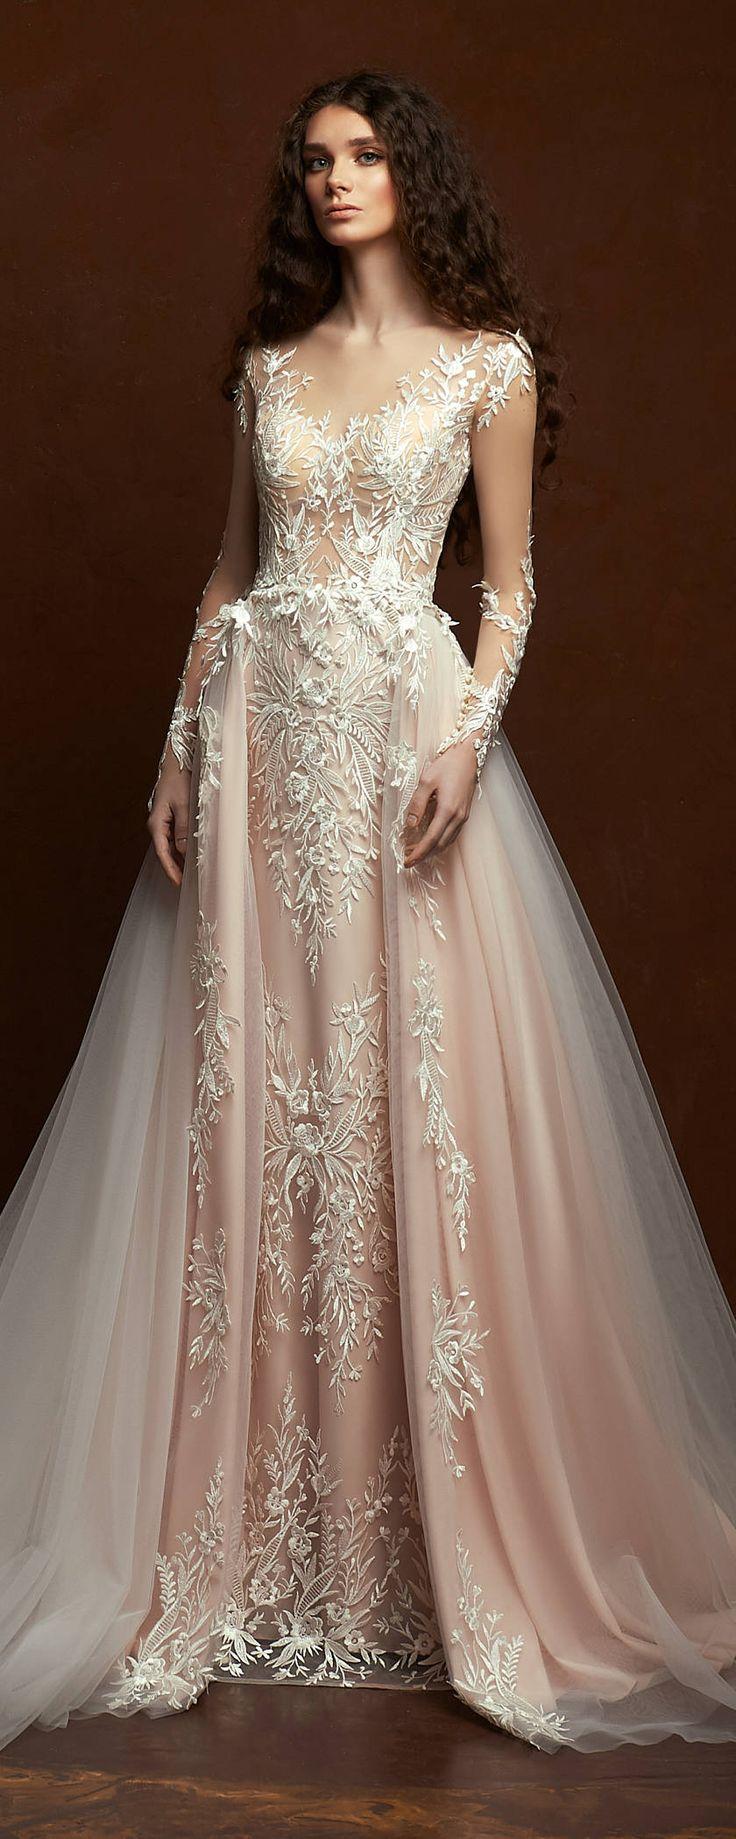 زفاف - Cream Lace Dress Boho Wedding Dress Lace Dress Bohemian Wedding Dress 2018 Rustic Wedding Long Lace Dress Bridal Dress White Wedding Train